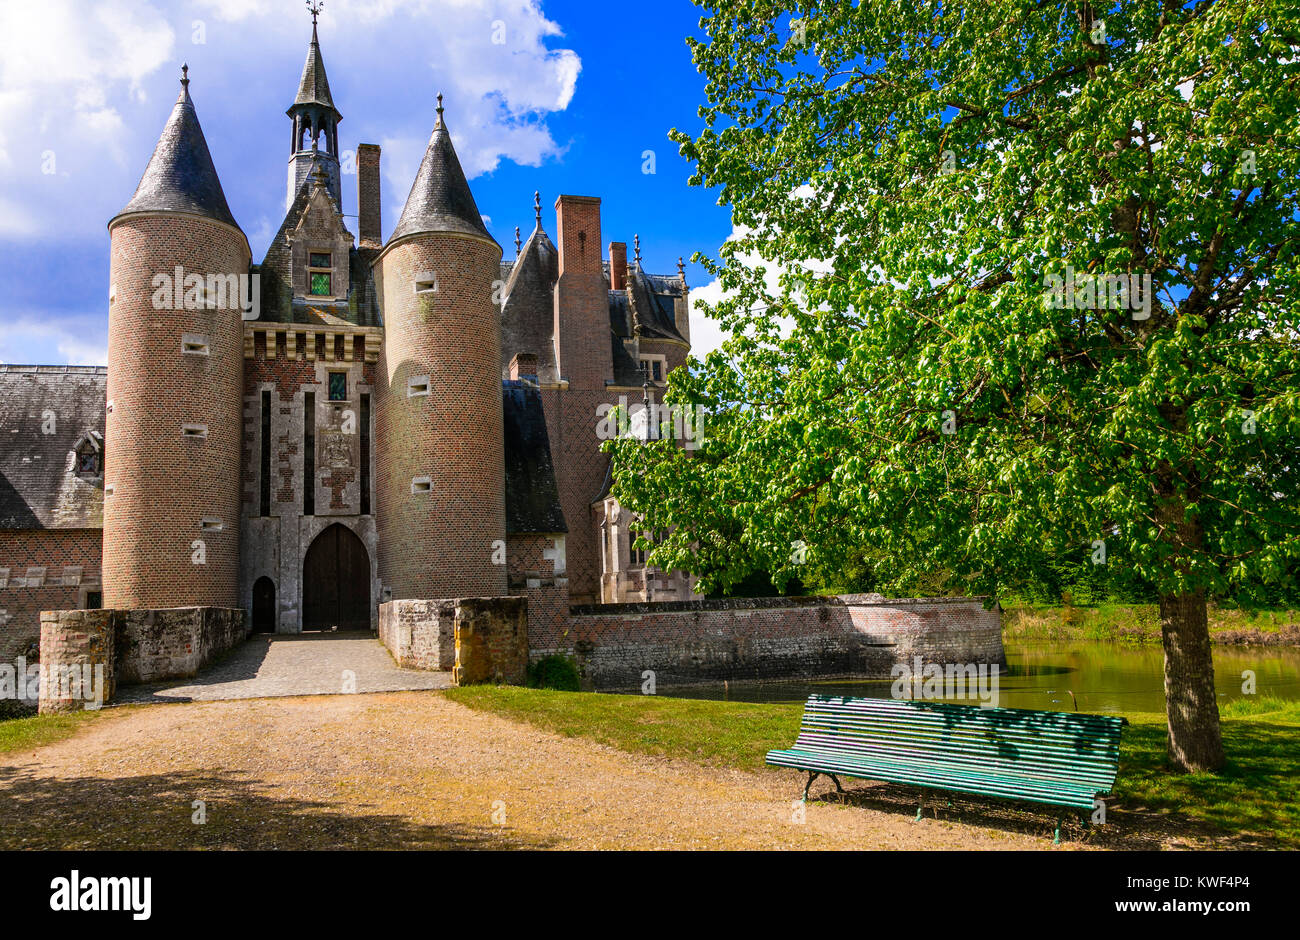 Impressionante Chateau du Moulin,della Valle della Loira, Francia. Foto Stock